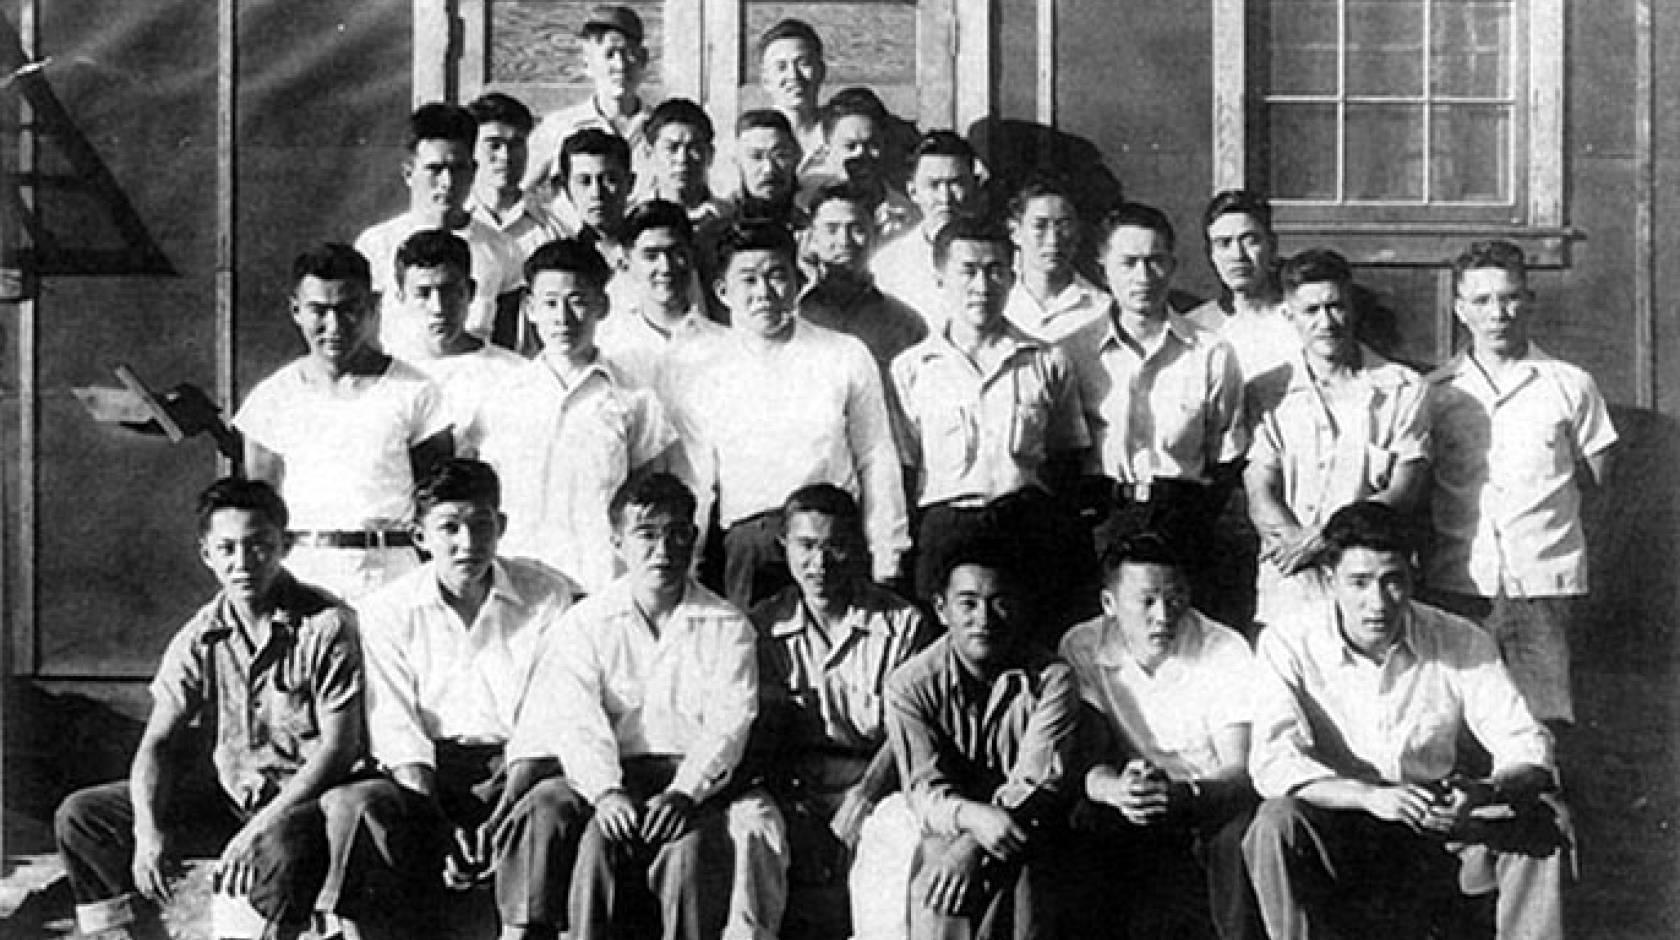 Japanese American draft resisters at Tule Lake camp